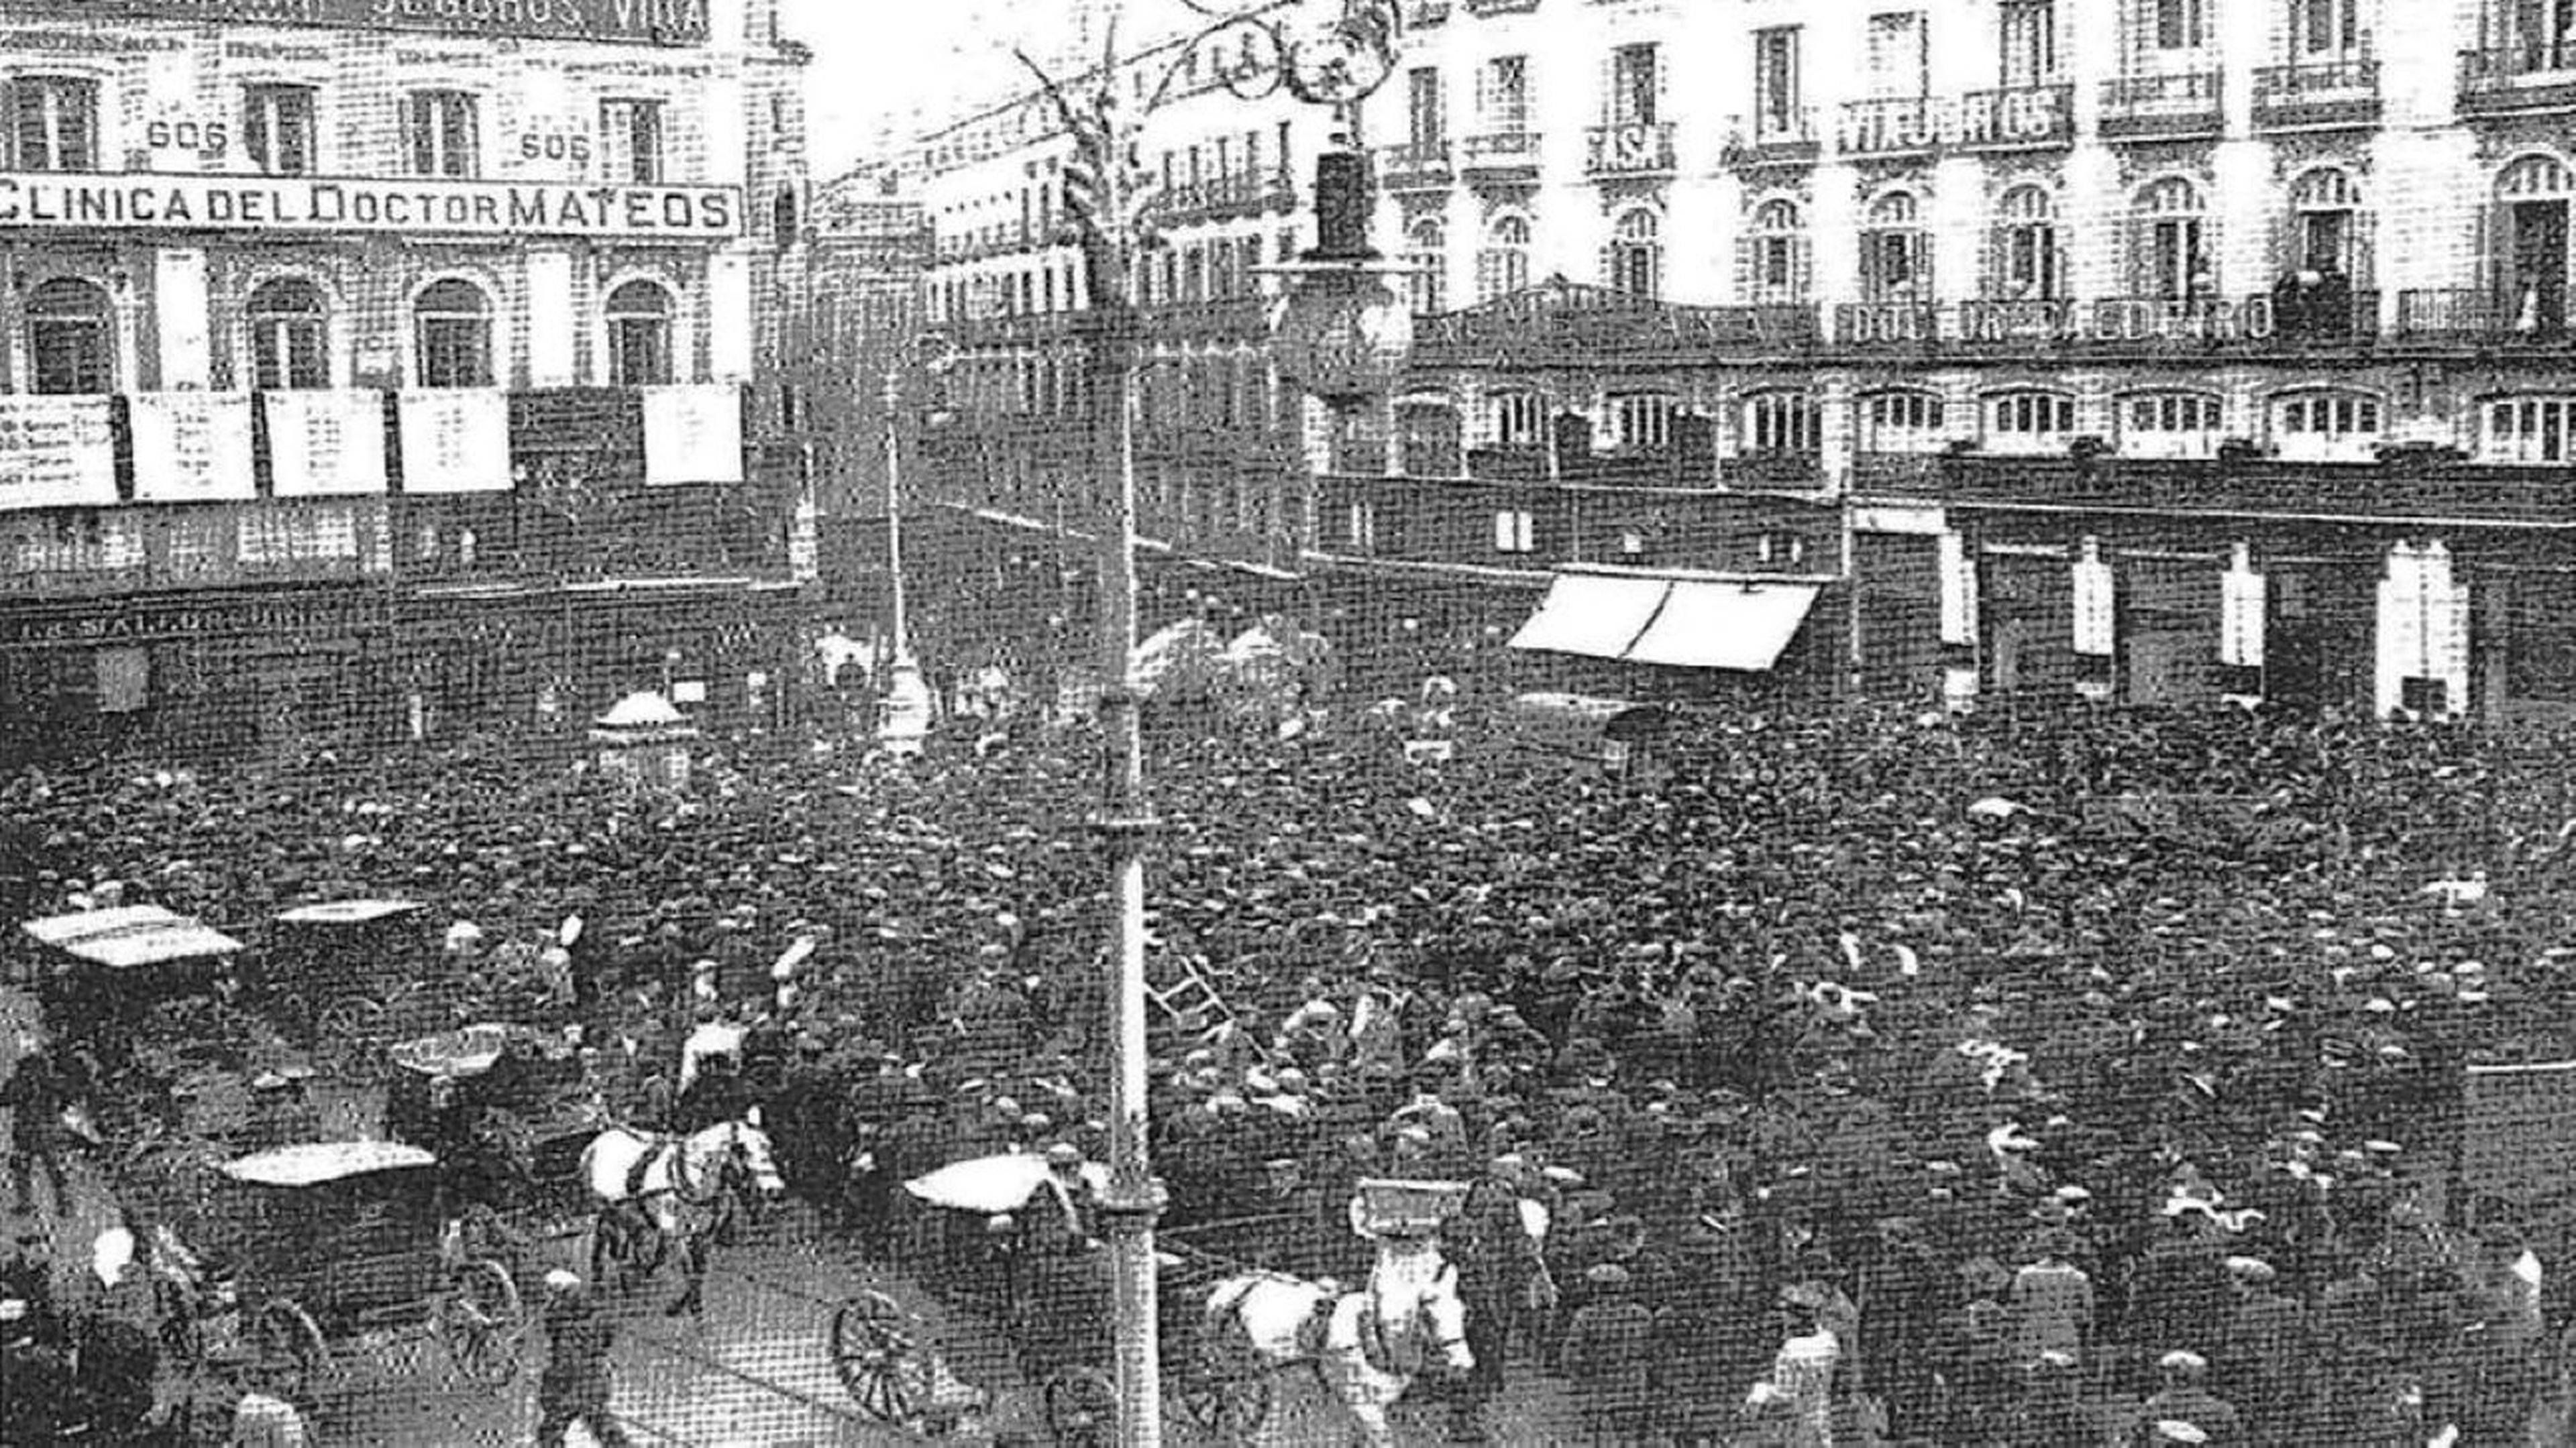 La Puerta del Sol en Madrid, en una imagen antigua.